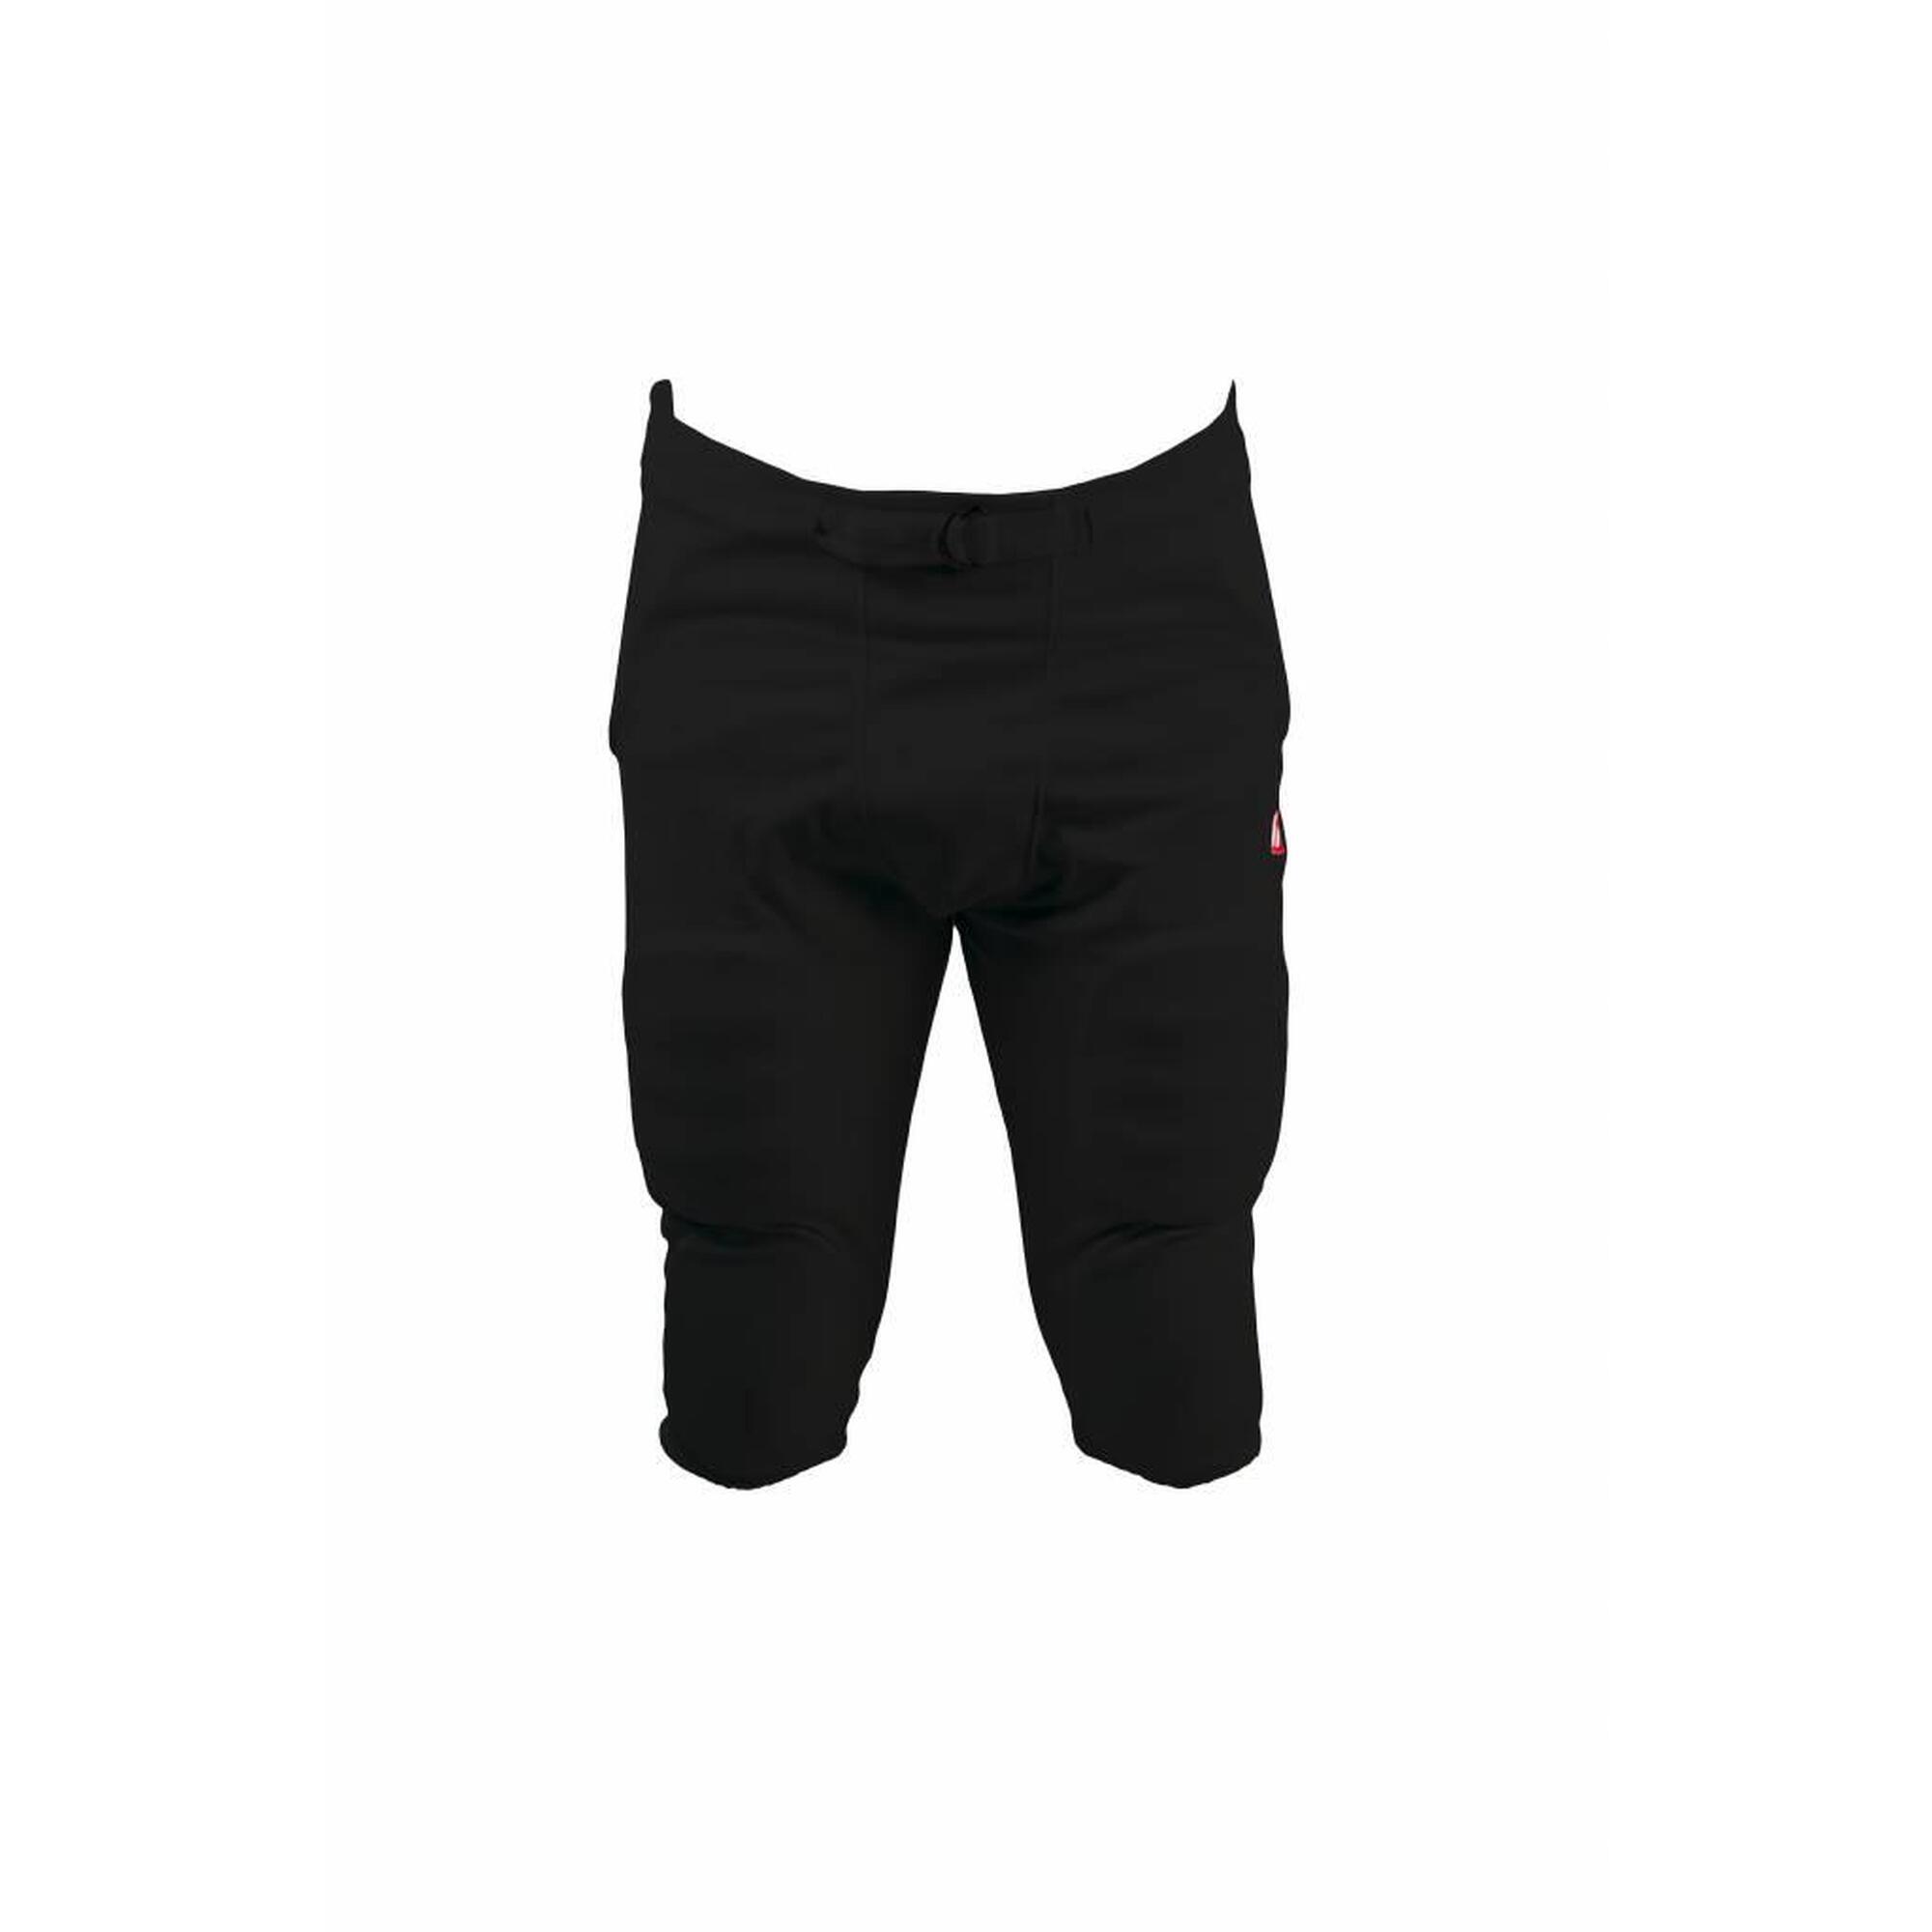 FPS-01 Pantaloni neri con protezioni integrate, 7 imbottiture